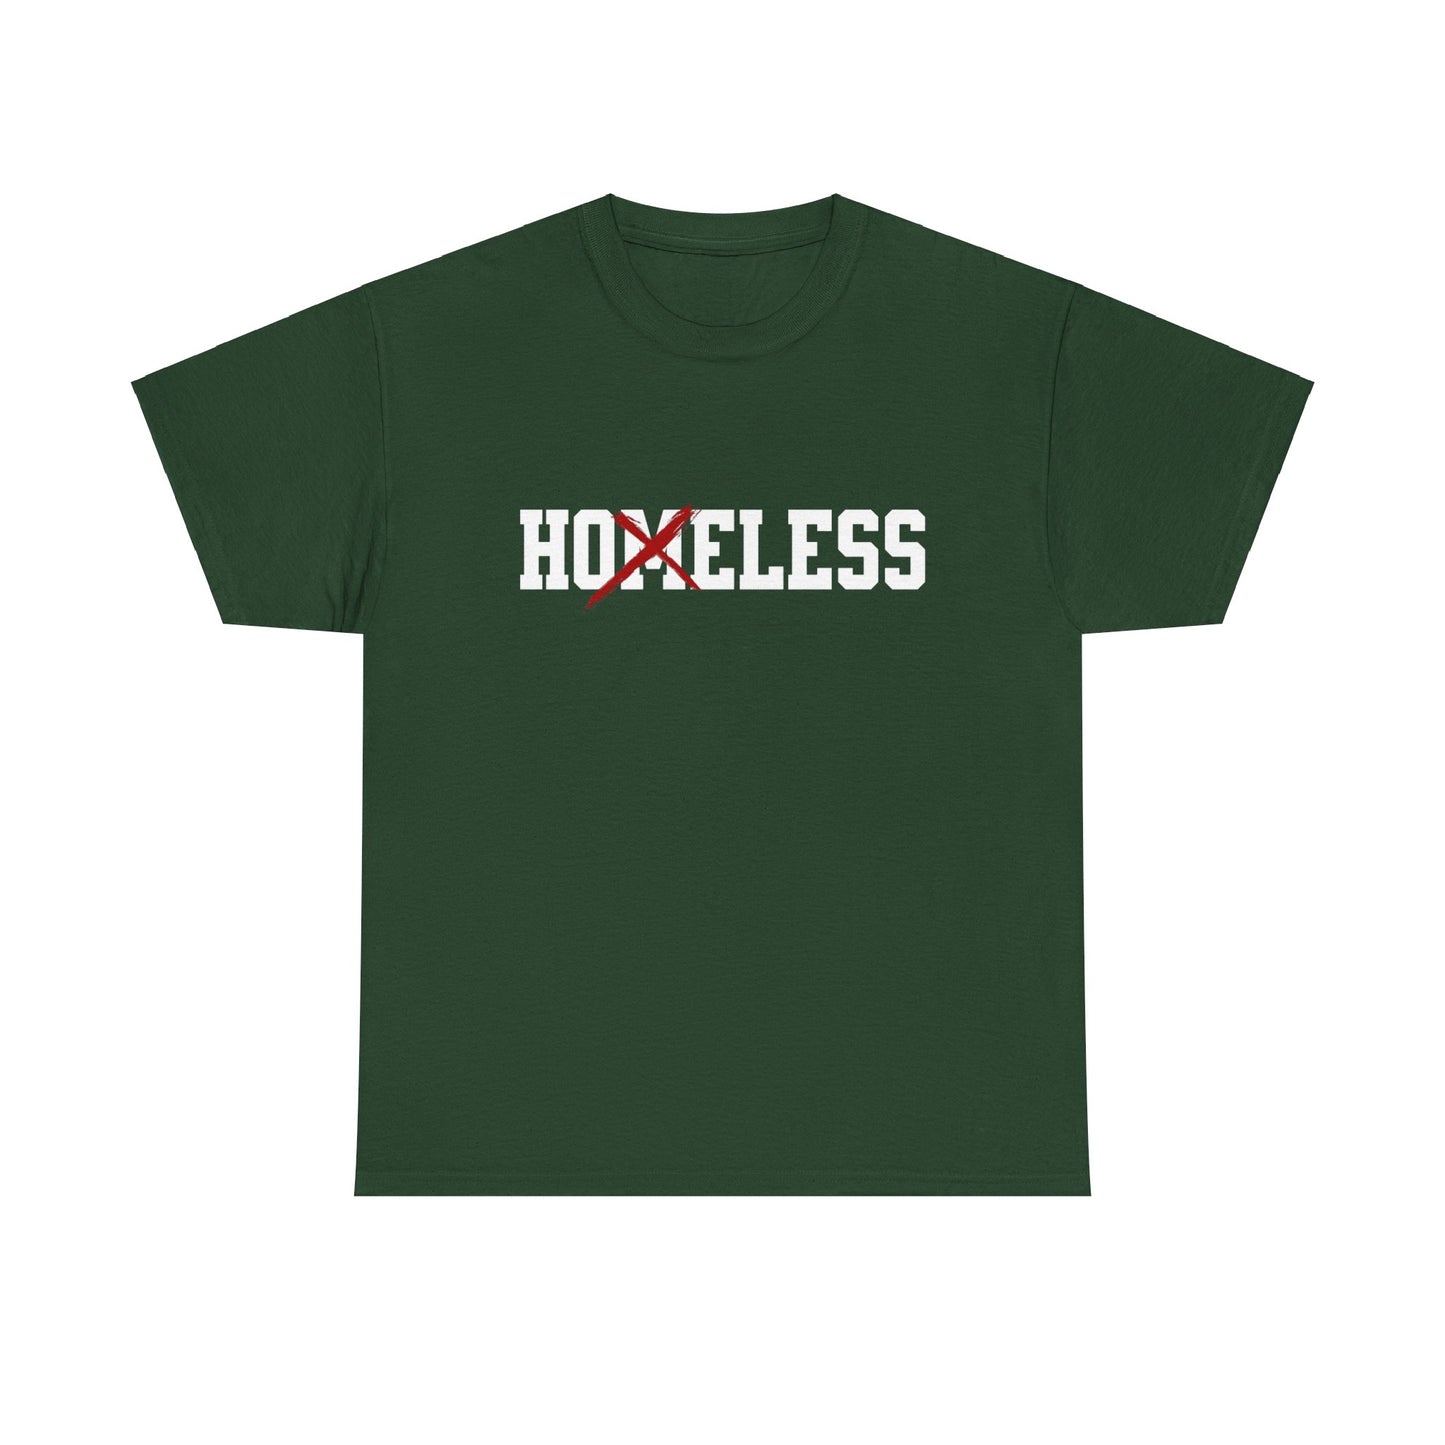 Unisex Shirt in grün mit dem Spruch Homeless drauf. Das M ist durchgestrichen; also steht auf dem Shirt Hoeless.